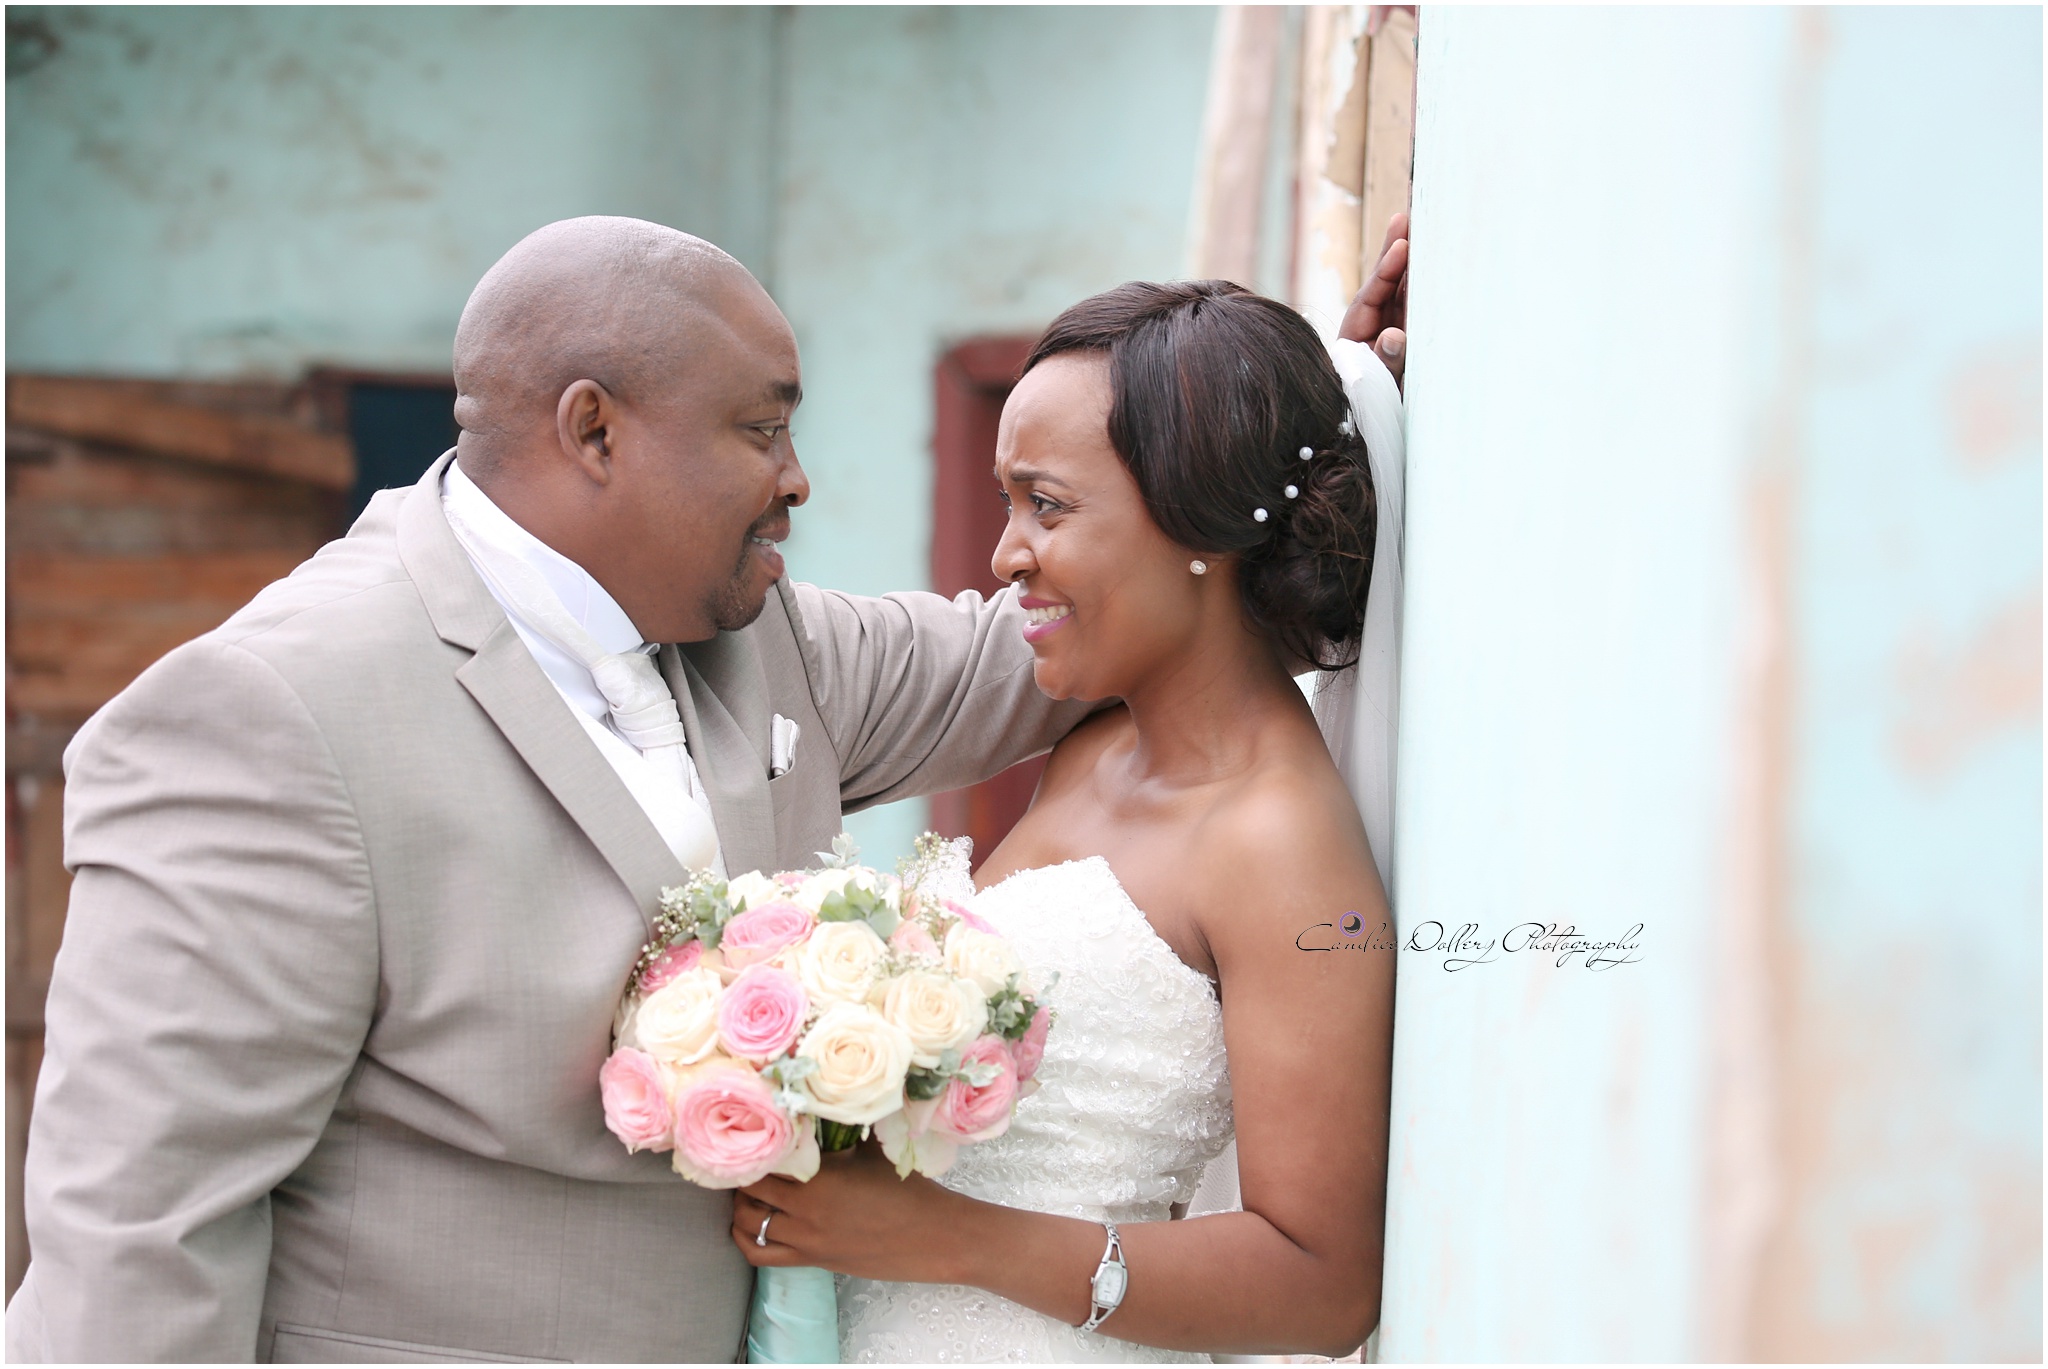 Masivuye & Khuselo's Wedding - Candice Dollery Photography_7290